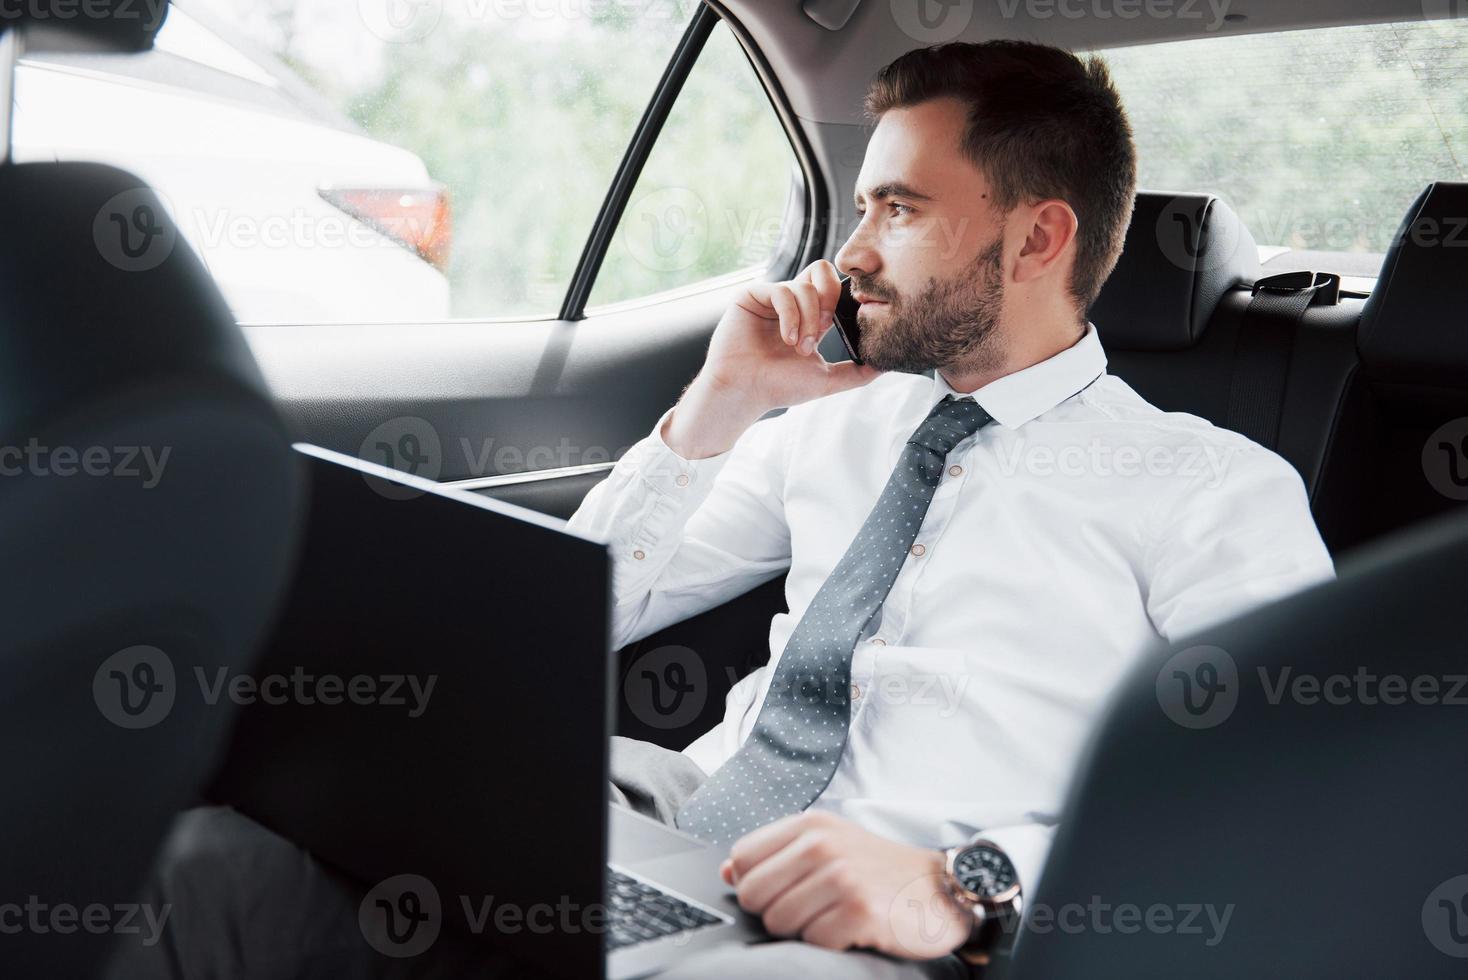 een jonge zakenman die aan een laptop werkt en aan de telefoon praat terwijl hij in de auto zit. werkt in beweging, waardeert zijn tijd foto